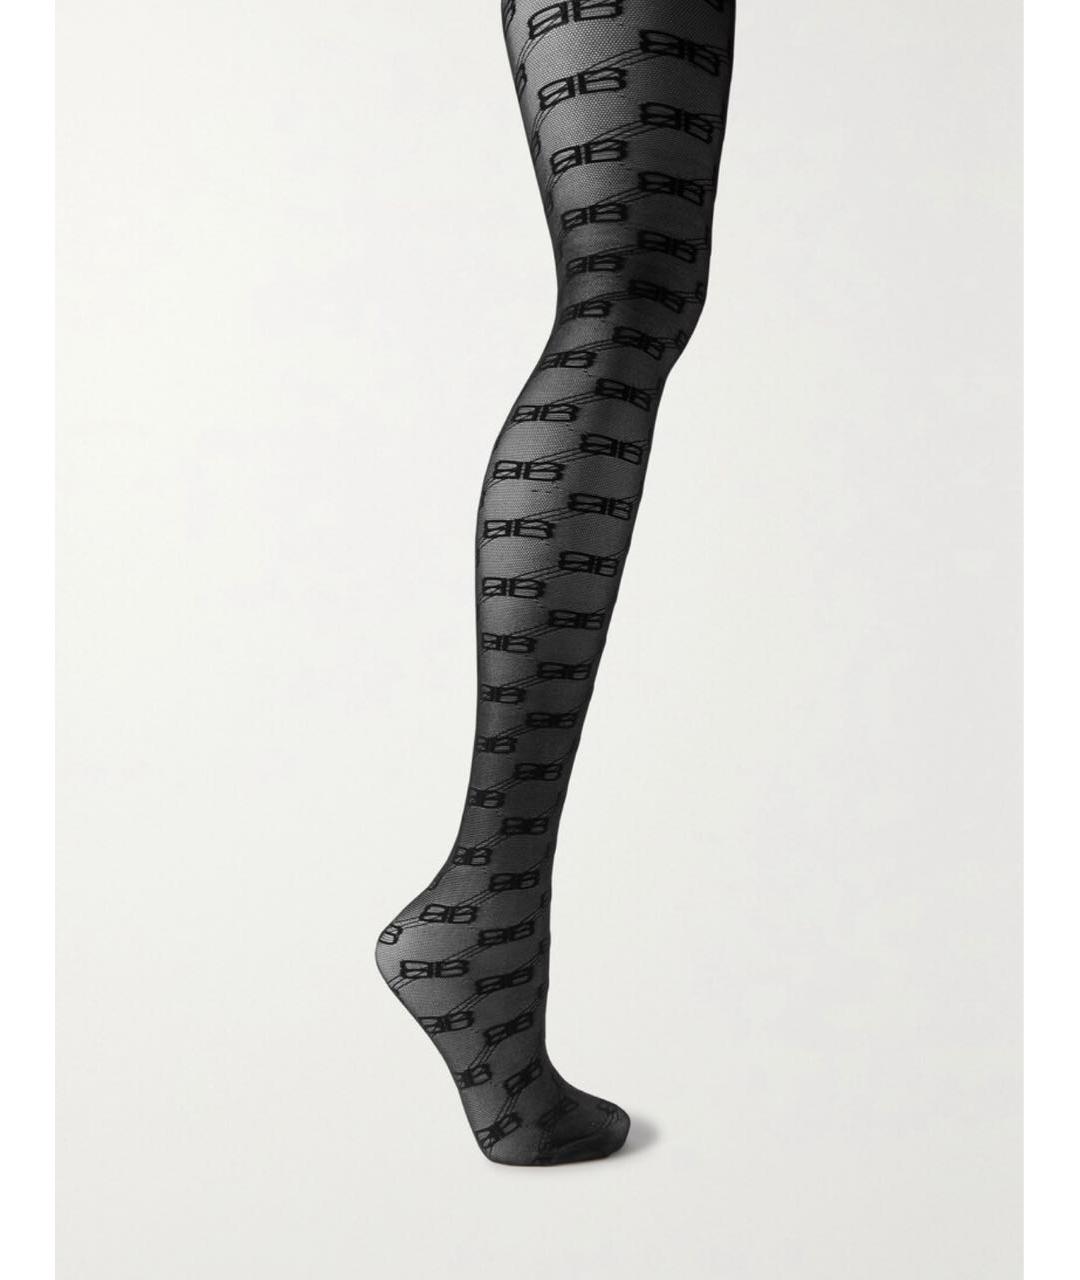 Носки, чулки и колготы BALENCIAGA для женщин купить за 38000 руб, арт.  1596926 – Интернет-магазин Oskelly